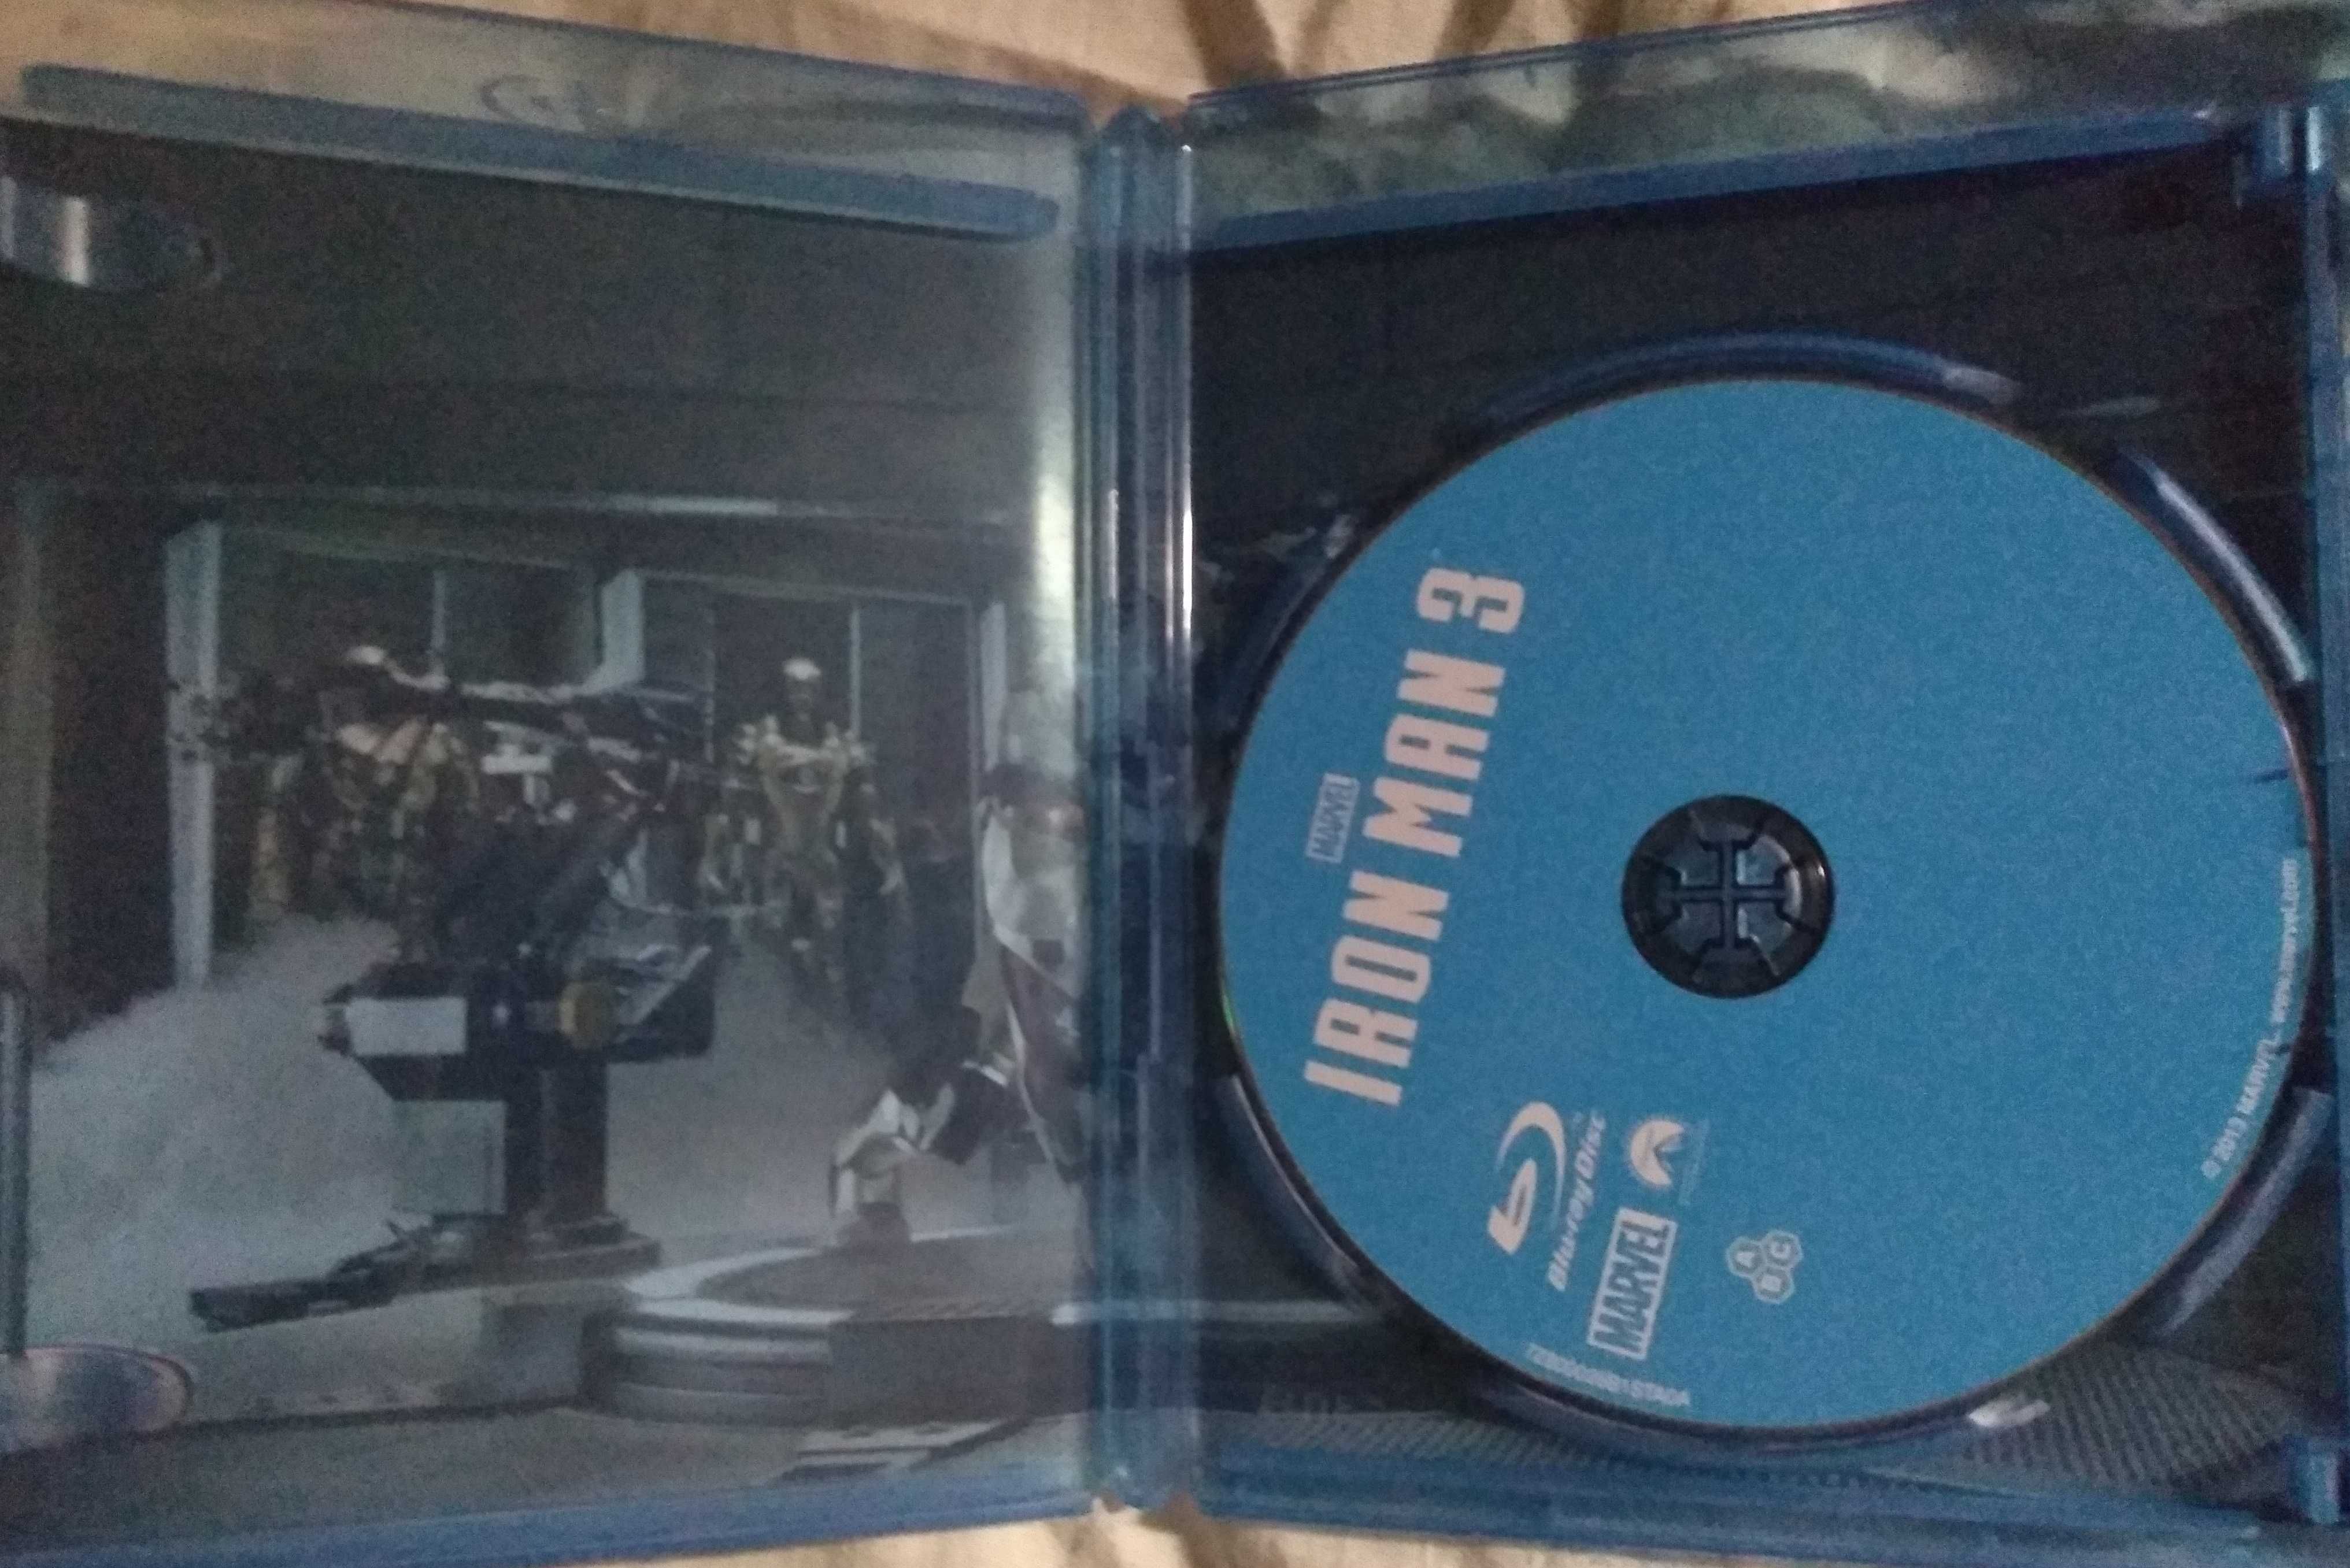 Iron Man 3 / Idealna / Blu-Ray / Dubbing PL /